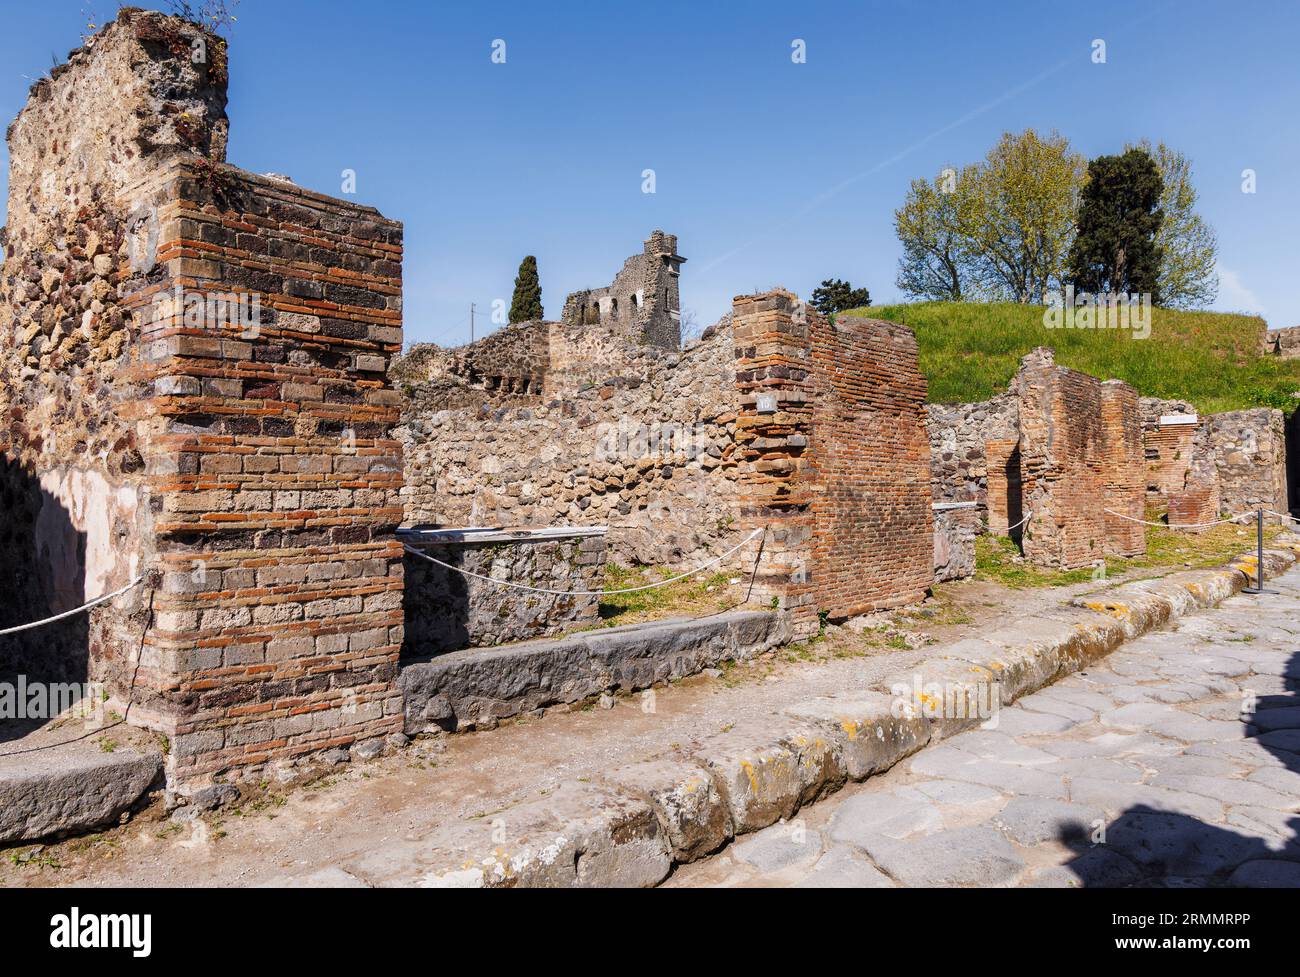 Sito archeologico di Pompei, Campania, Italia. Strade scavate. Pompei, Ercolano e Torre Annunziata sono collettivamente designate come Wor UNESCO Foto Stock